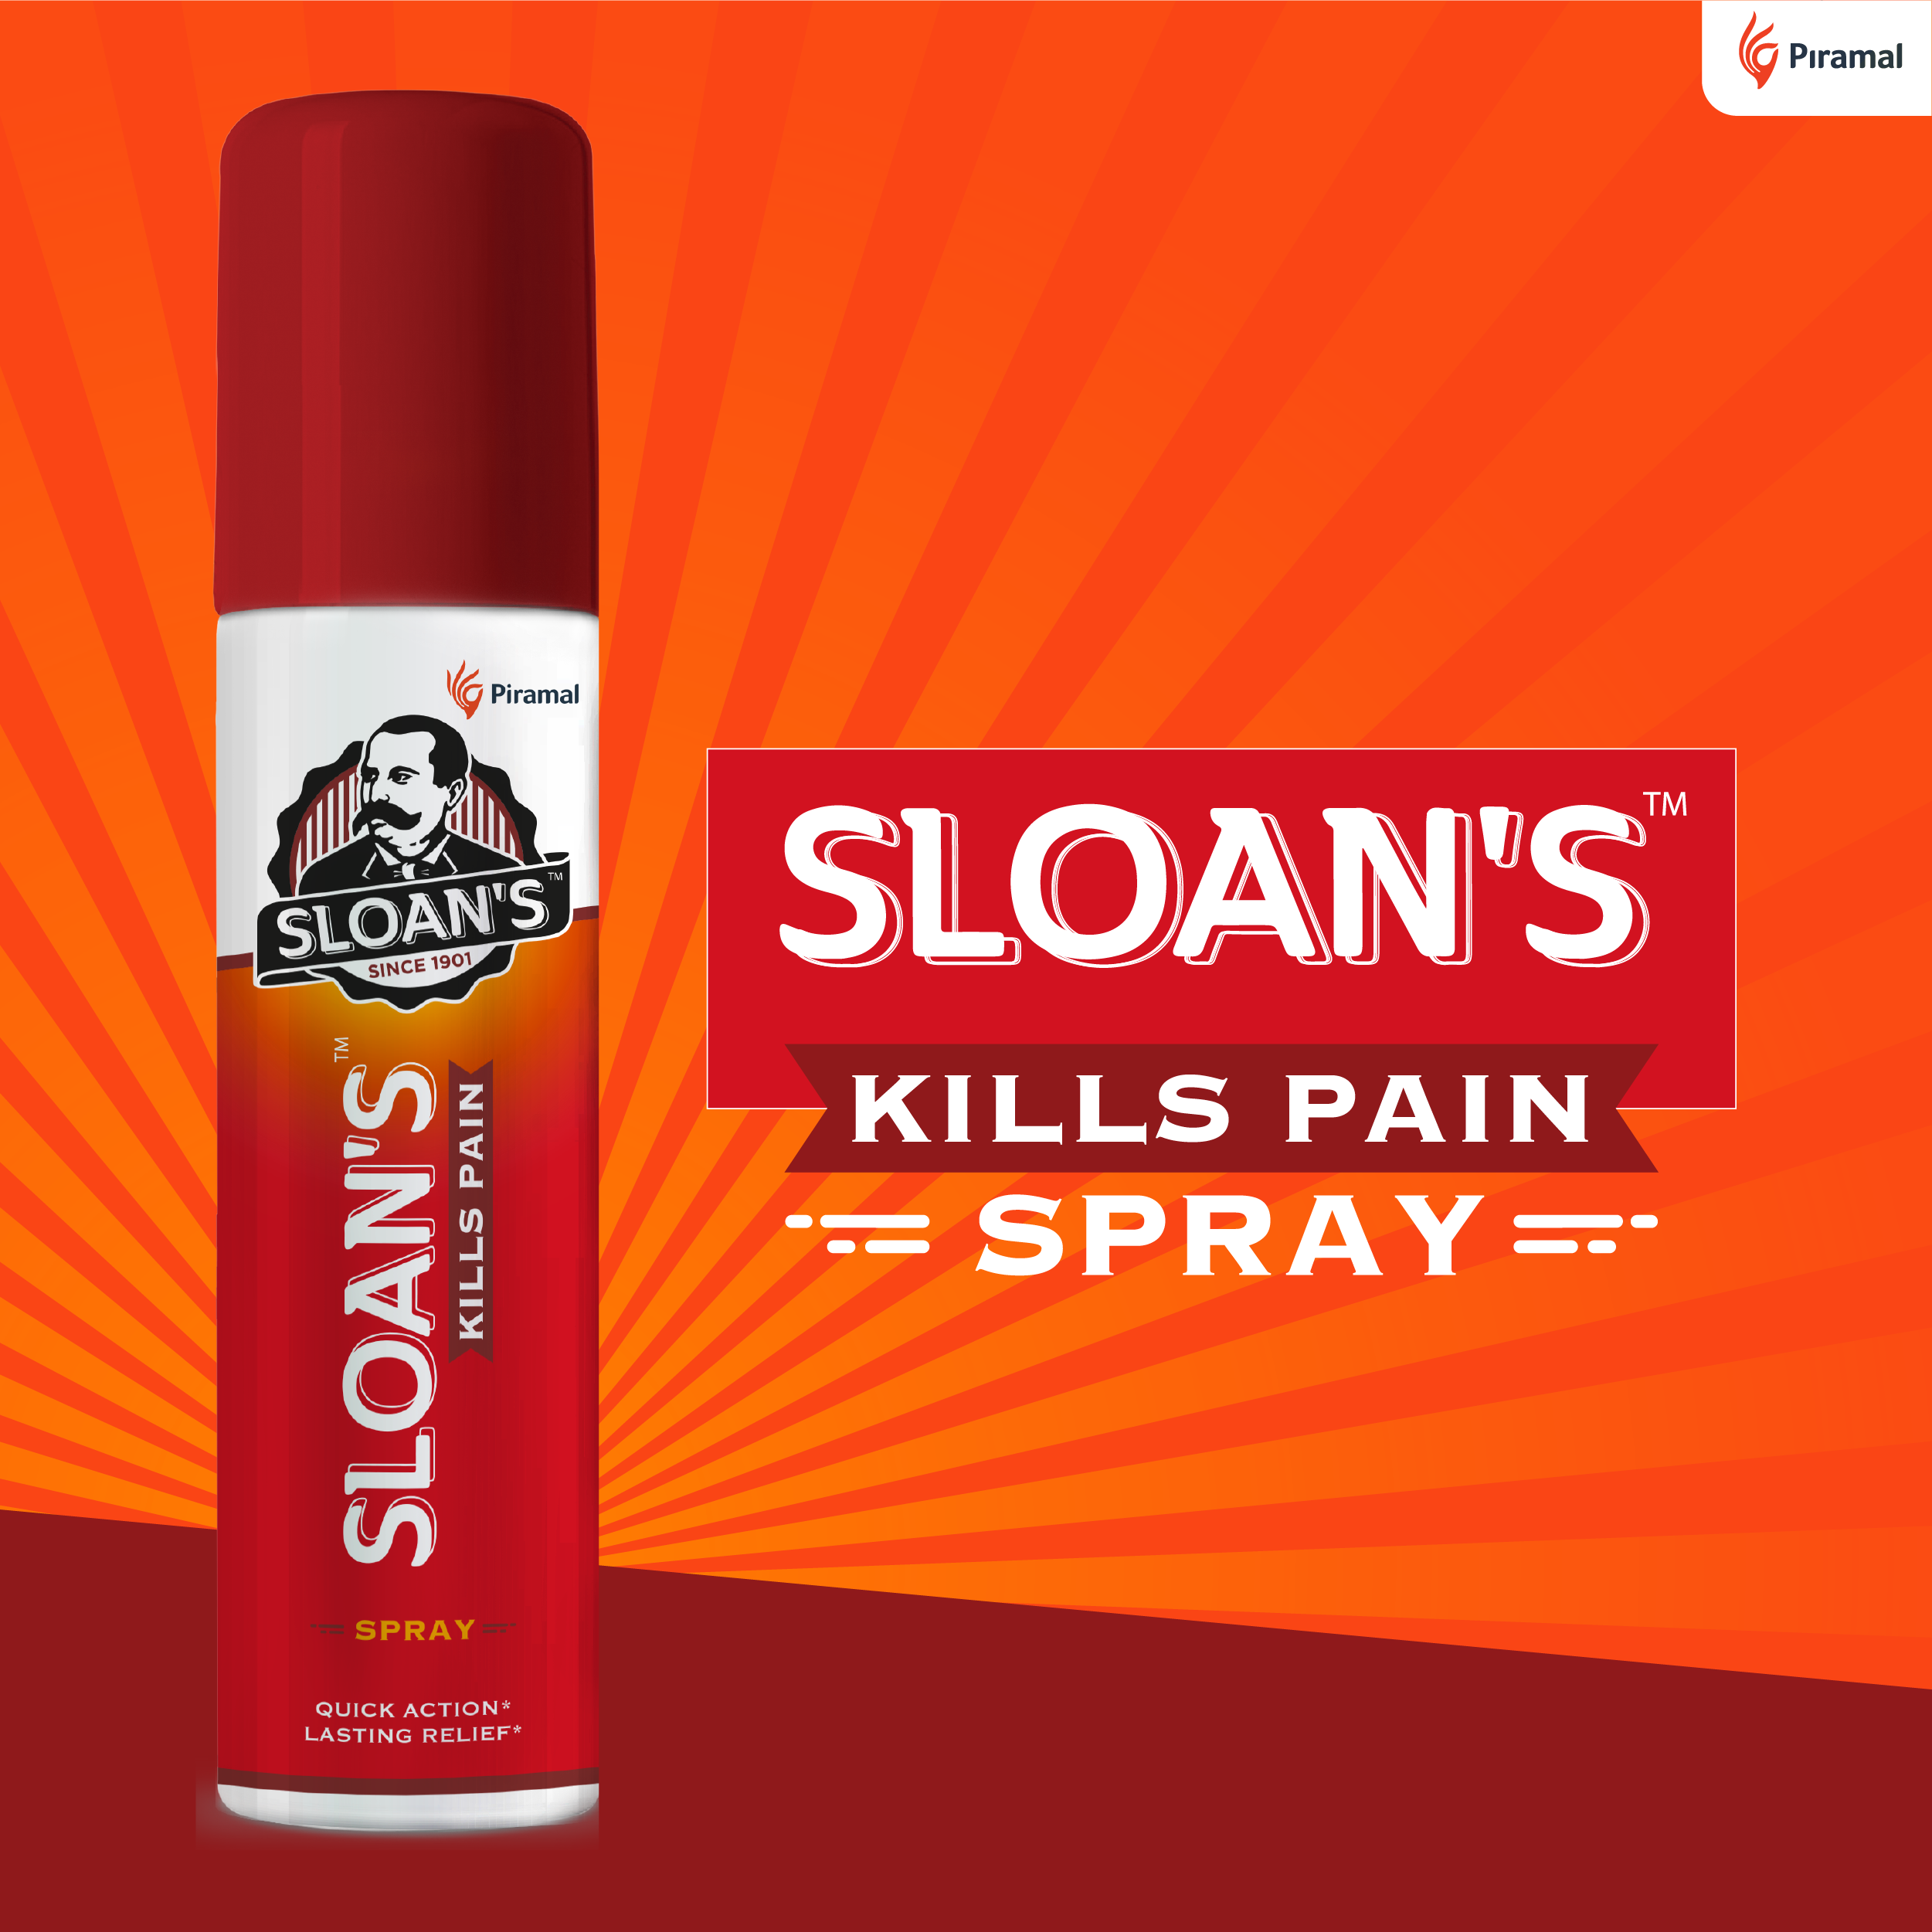 Sloans kill pain spray